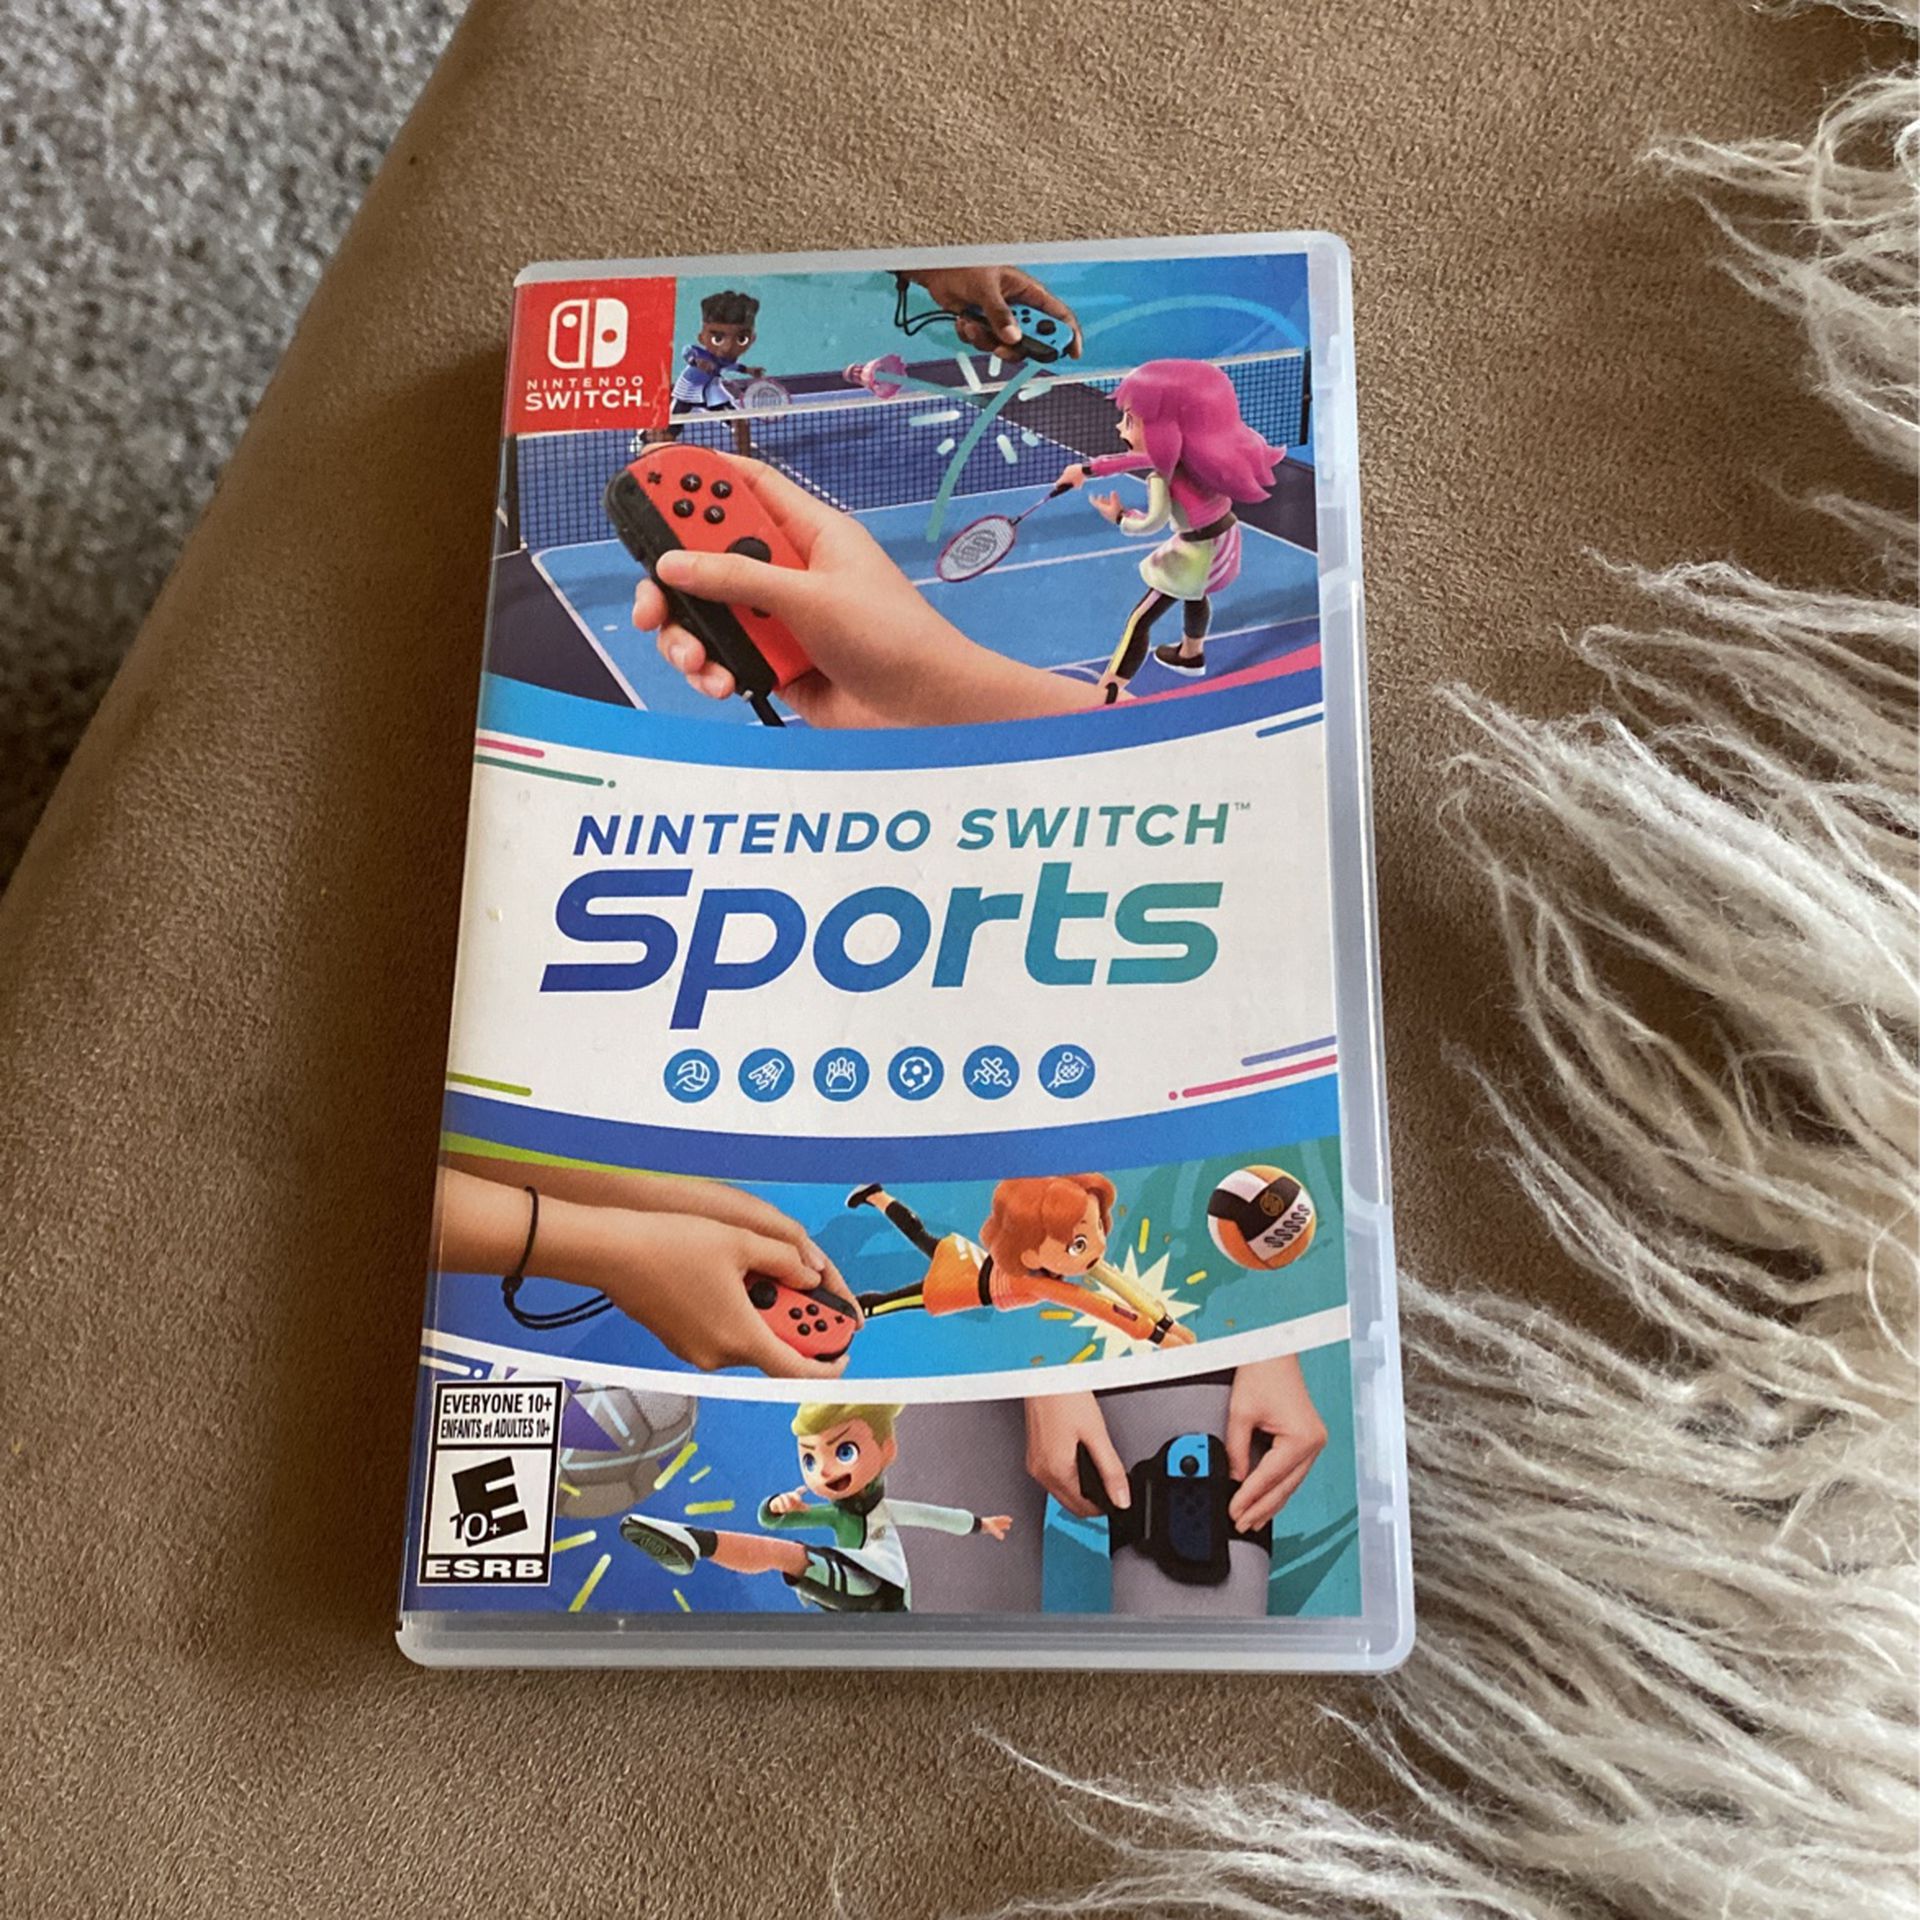 Nintendo Switch Sports 